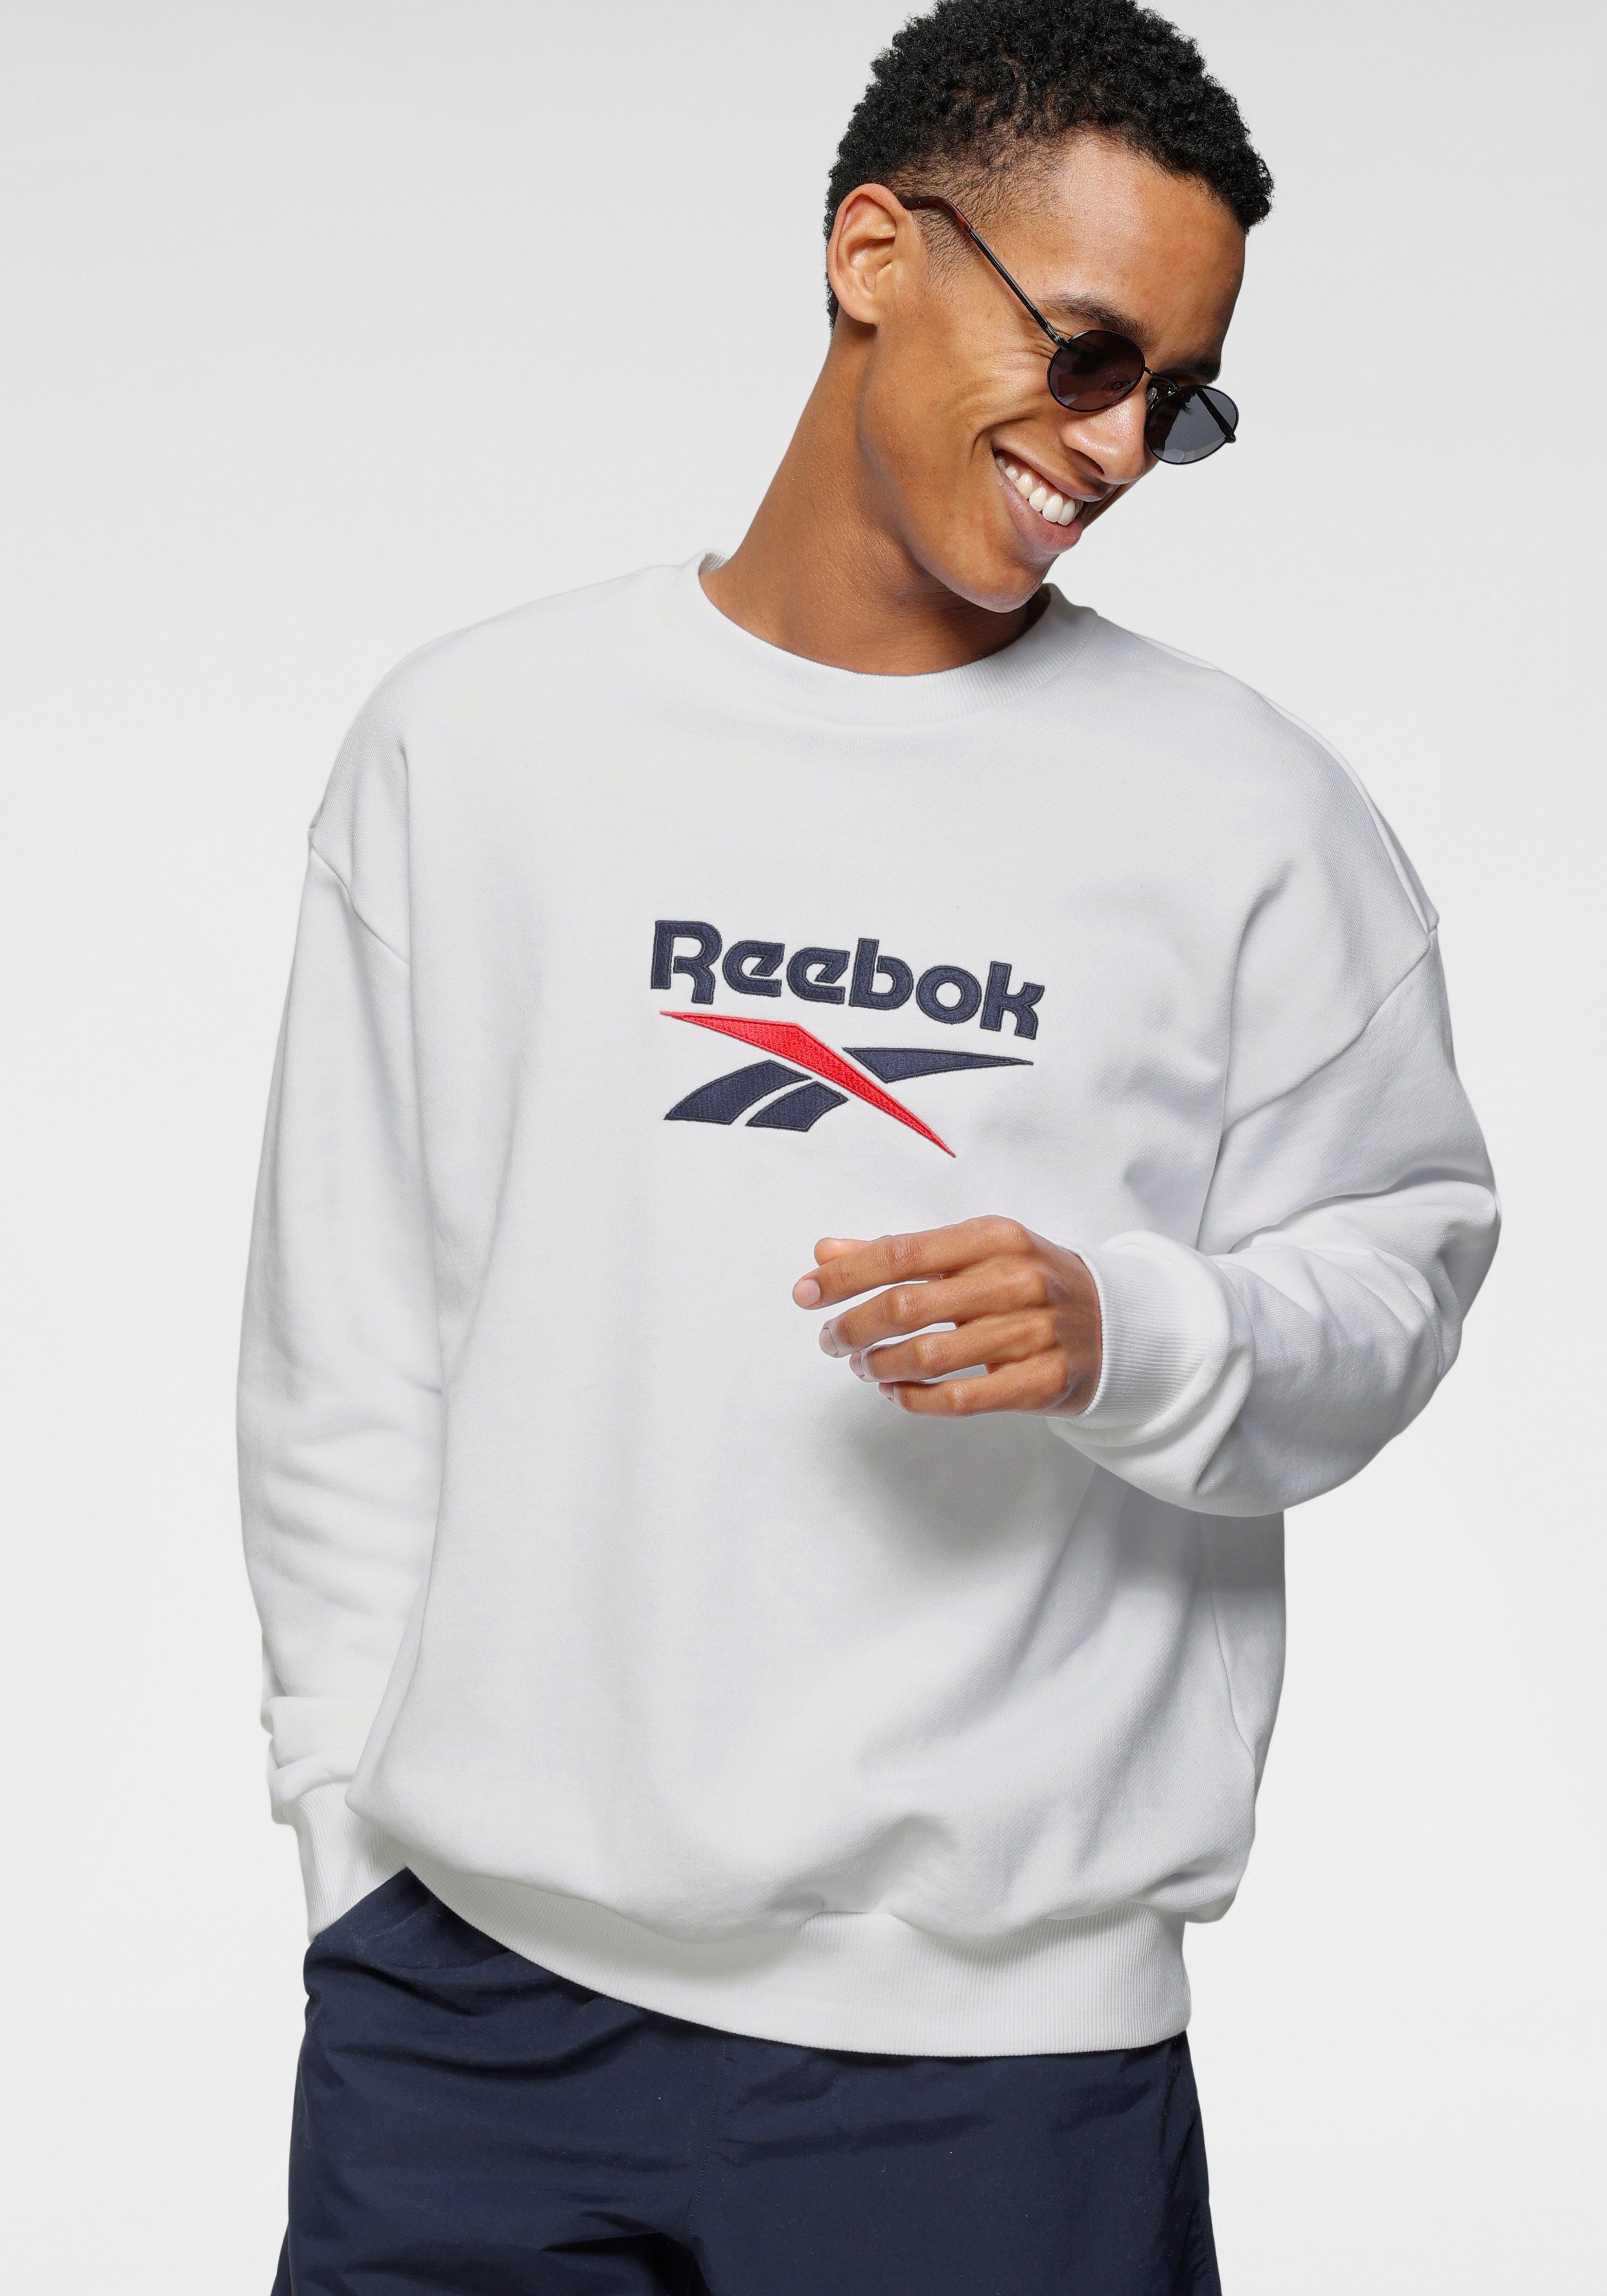 Reebok Classic Sweatshirt online kaufen | OTTO